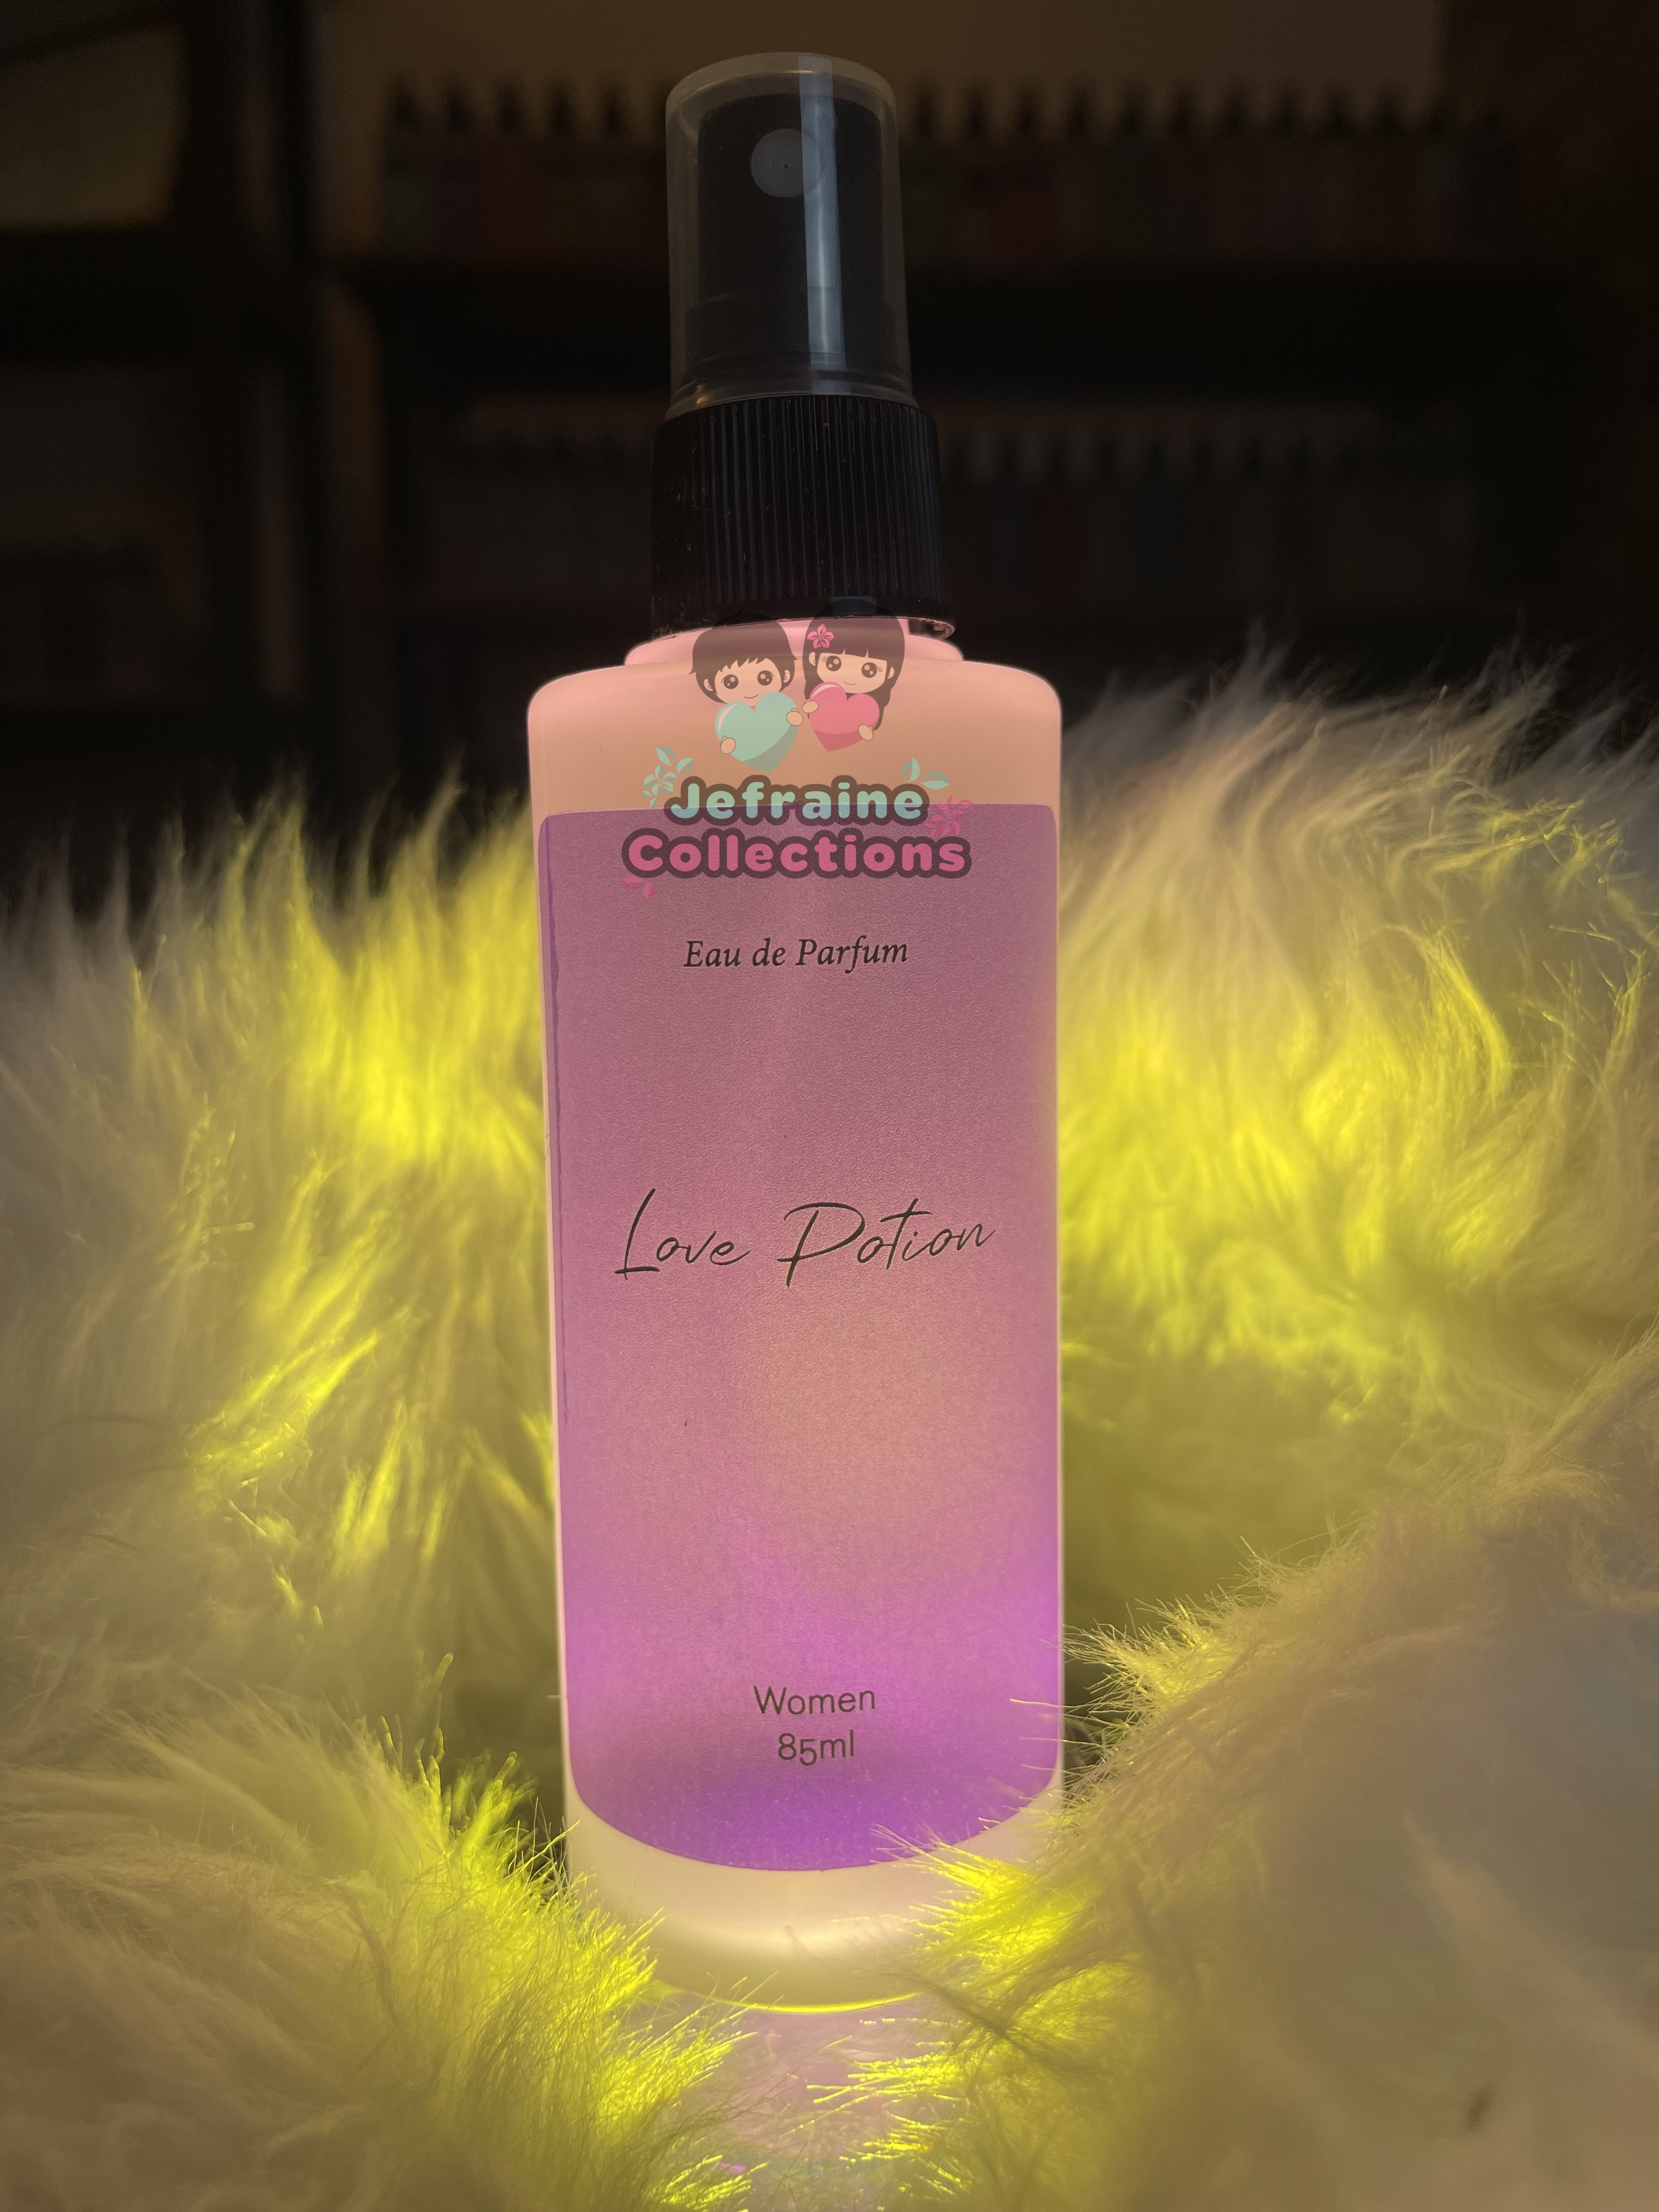 Velvet Petals Victoria's Secret Perfume Mist, Lotion, Shower gel